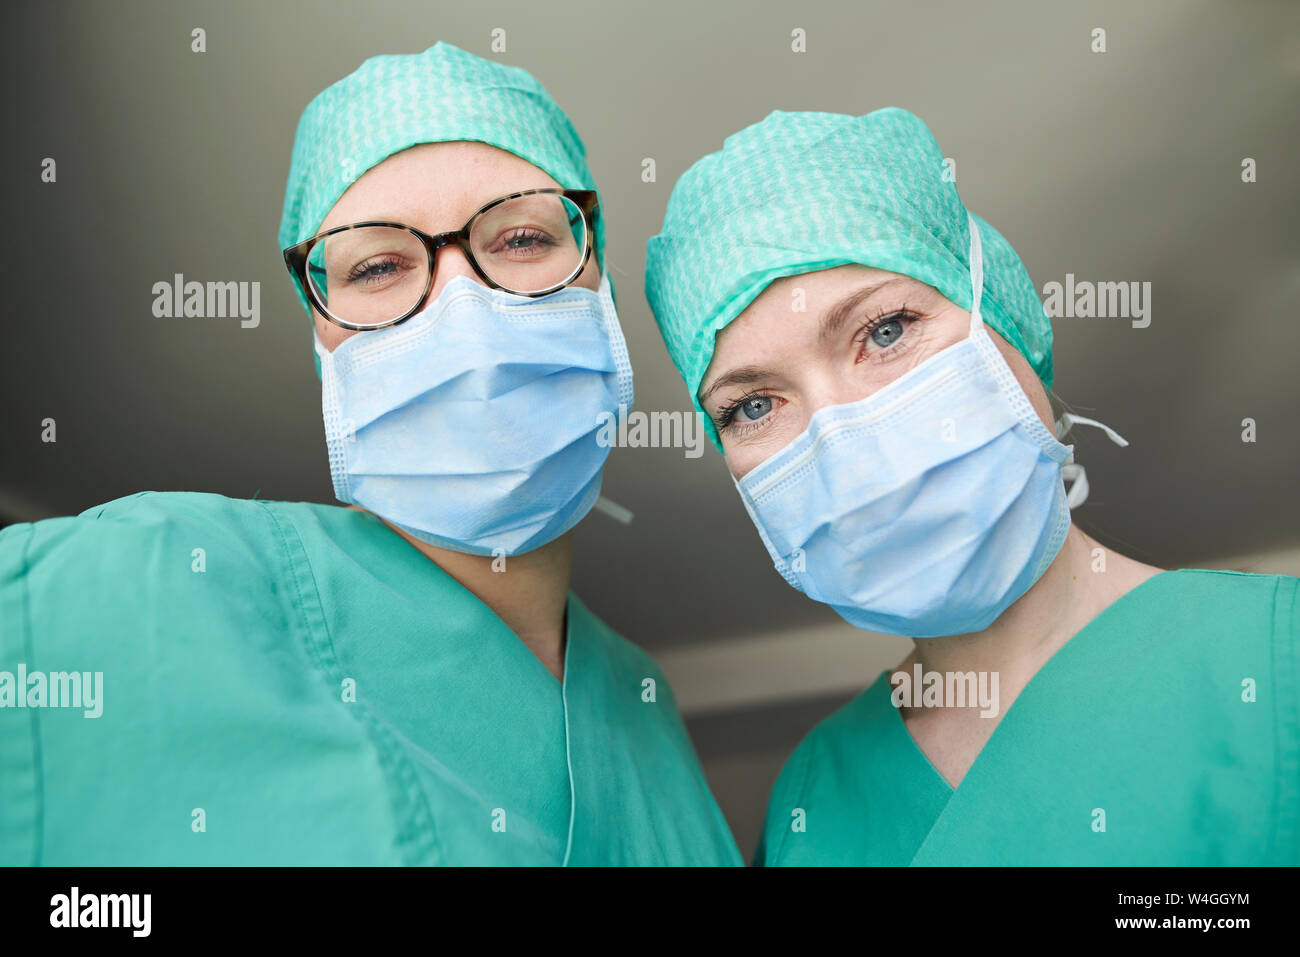 Portrait of two women in scrubs Stock Photo